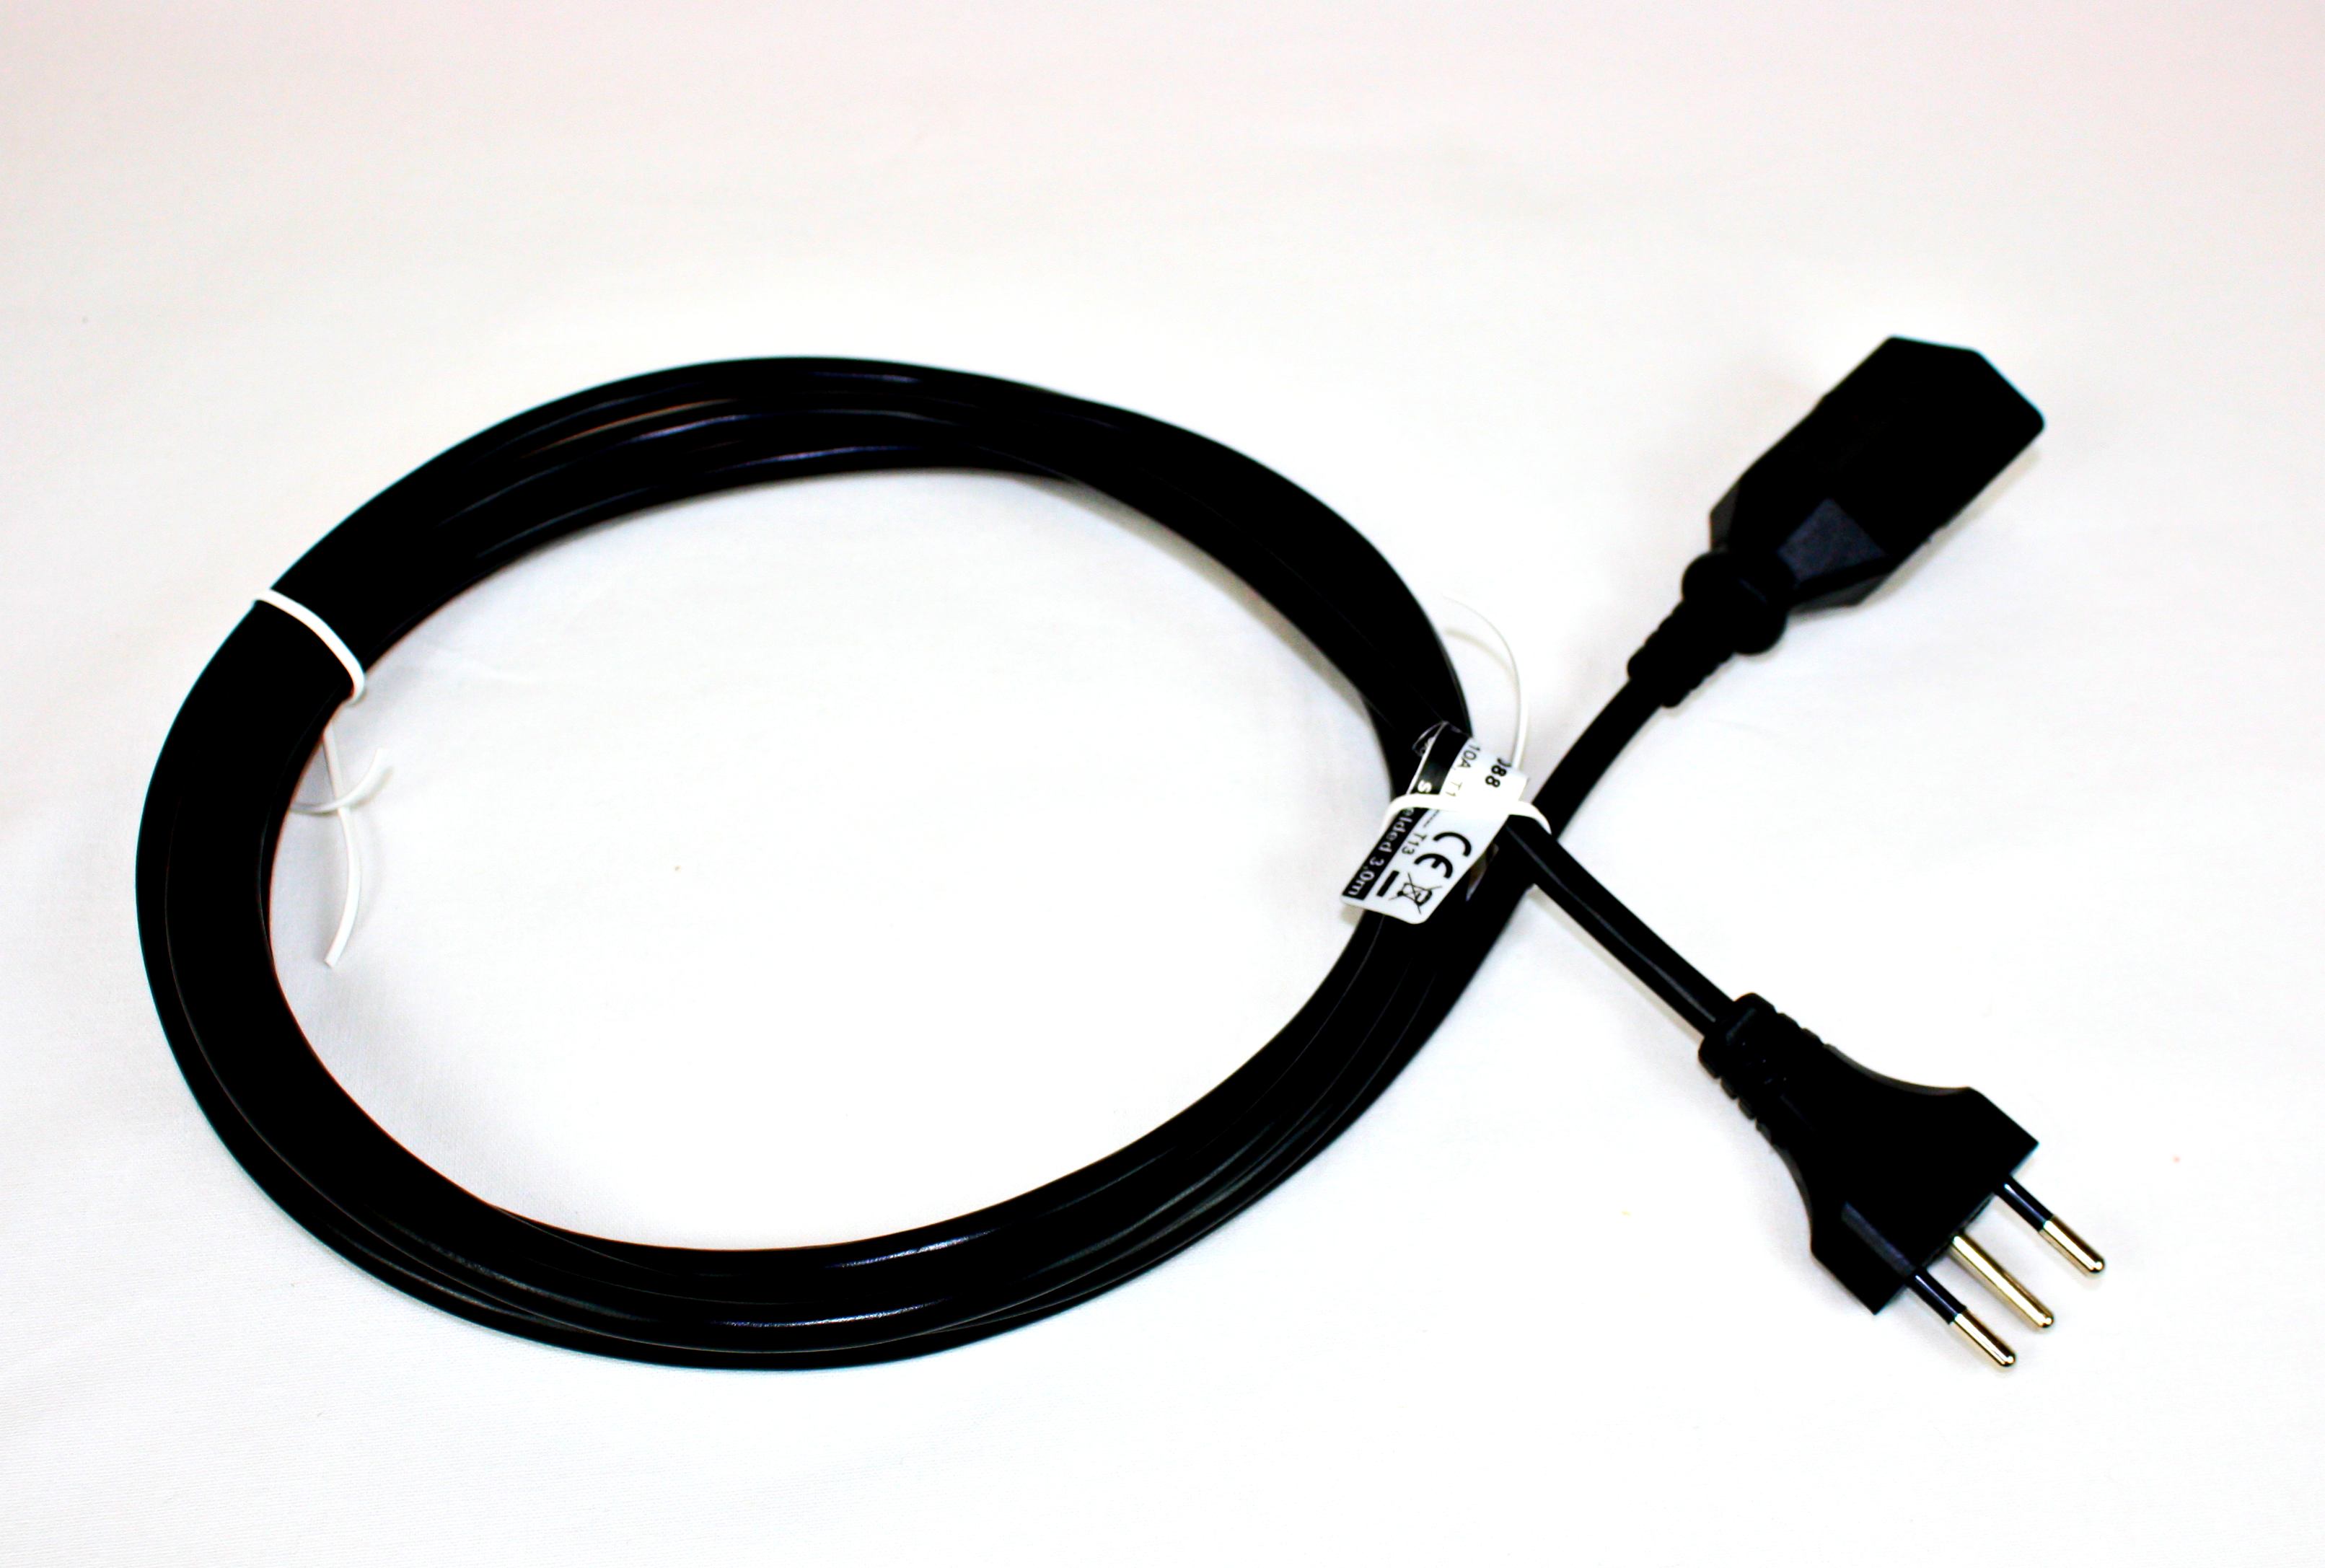 Câble de rallonge de 3m protégé par une fiche suisse noire - WAVESAFE